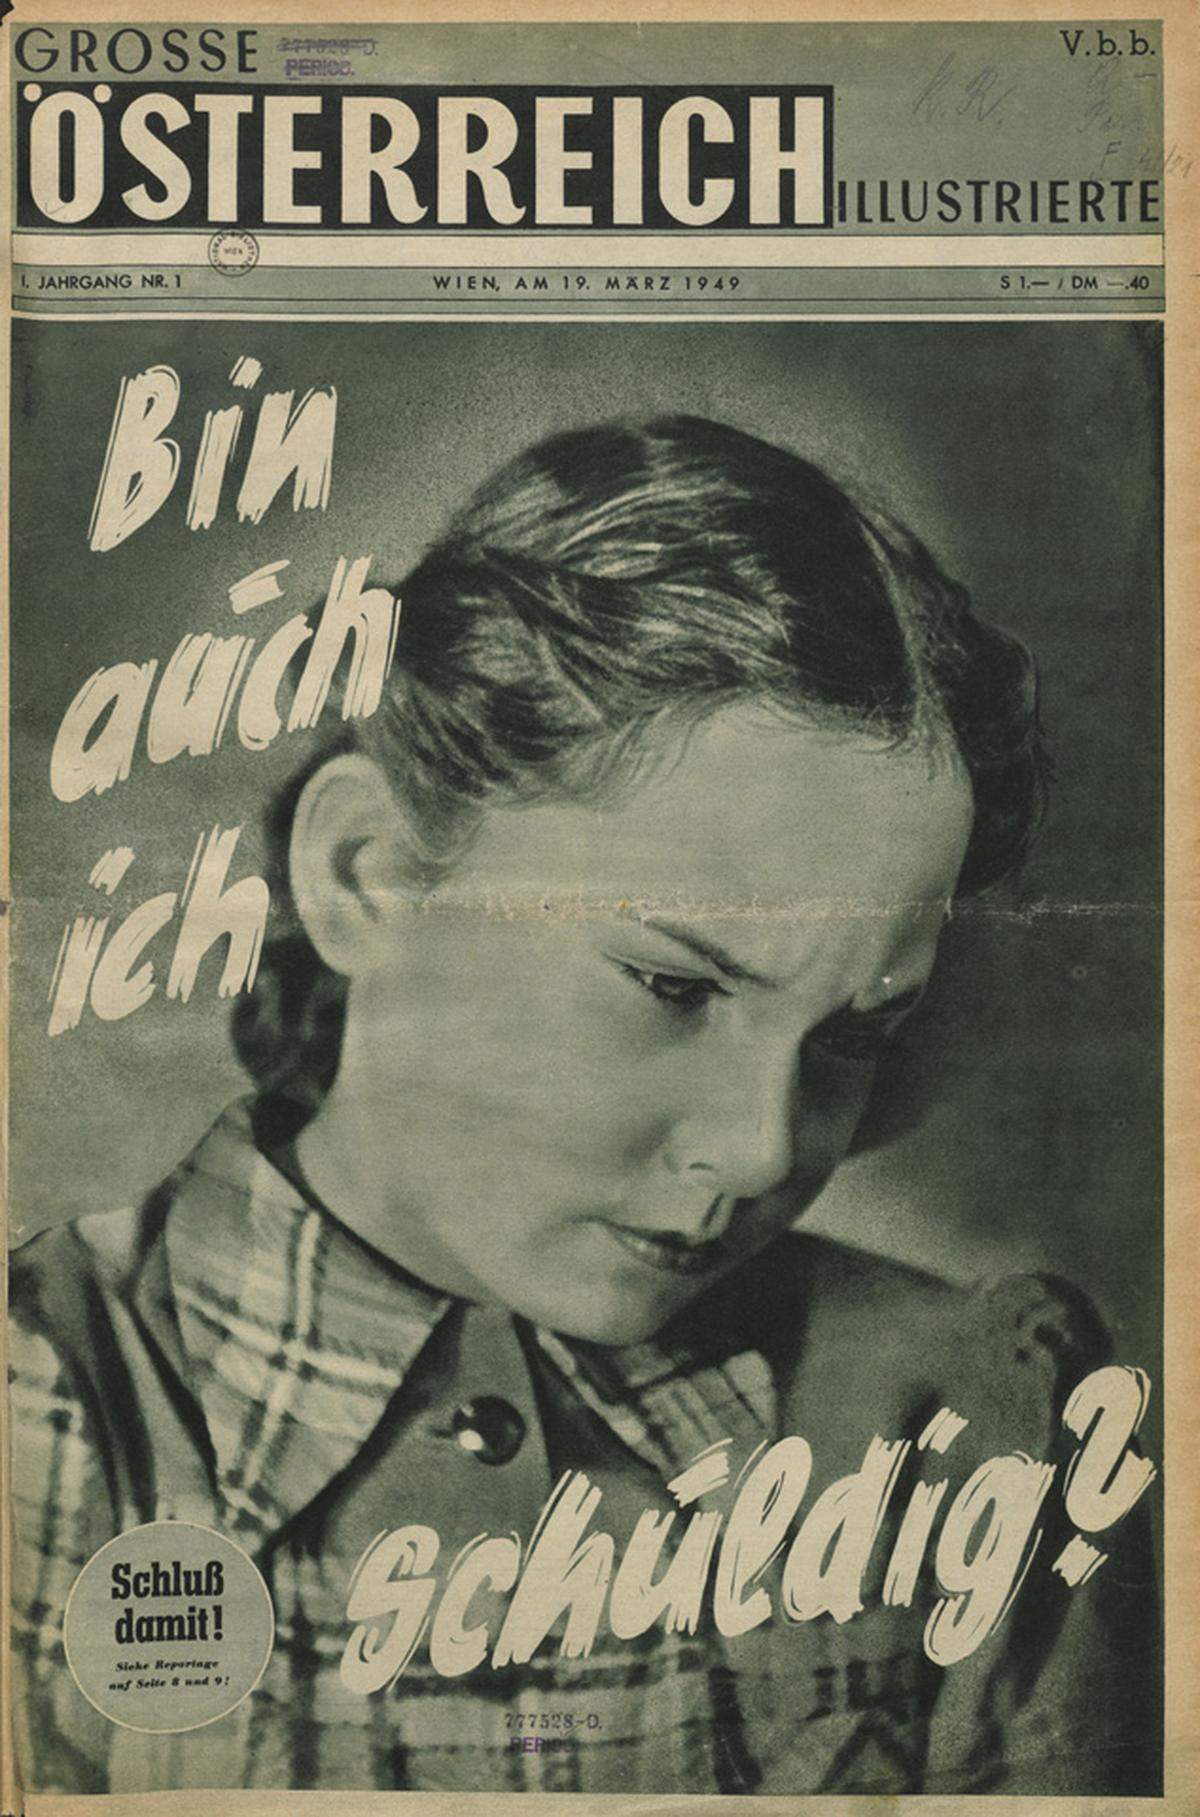 Das Titelblatt der "Großen Österreich Illustrierten": Bin auch ich schuldig? 